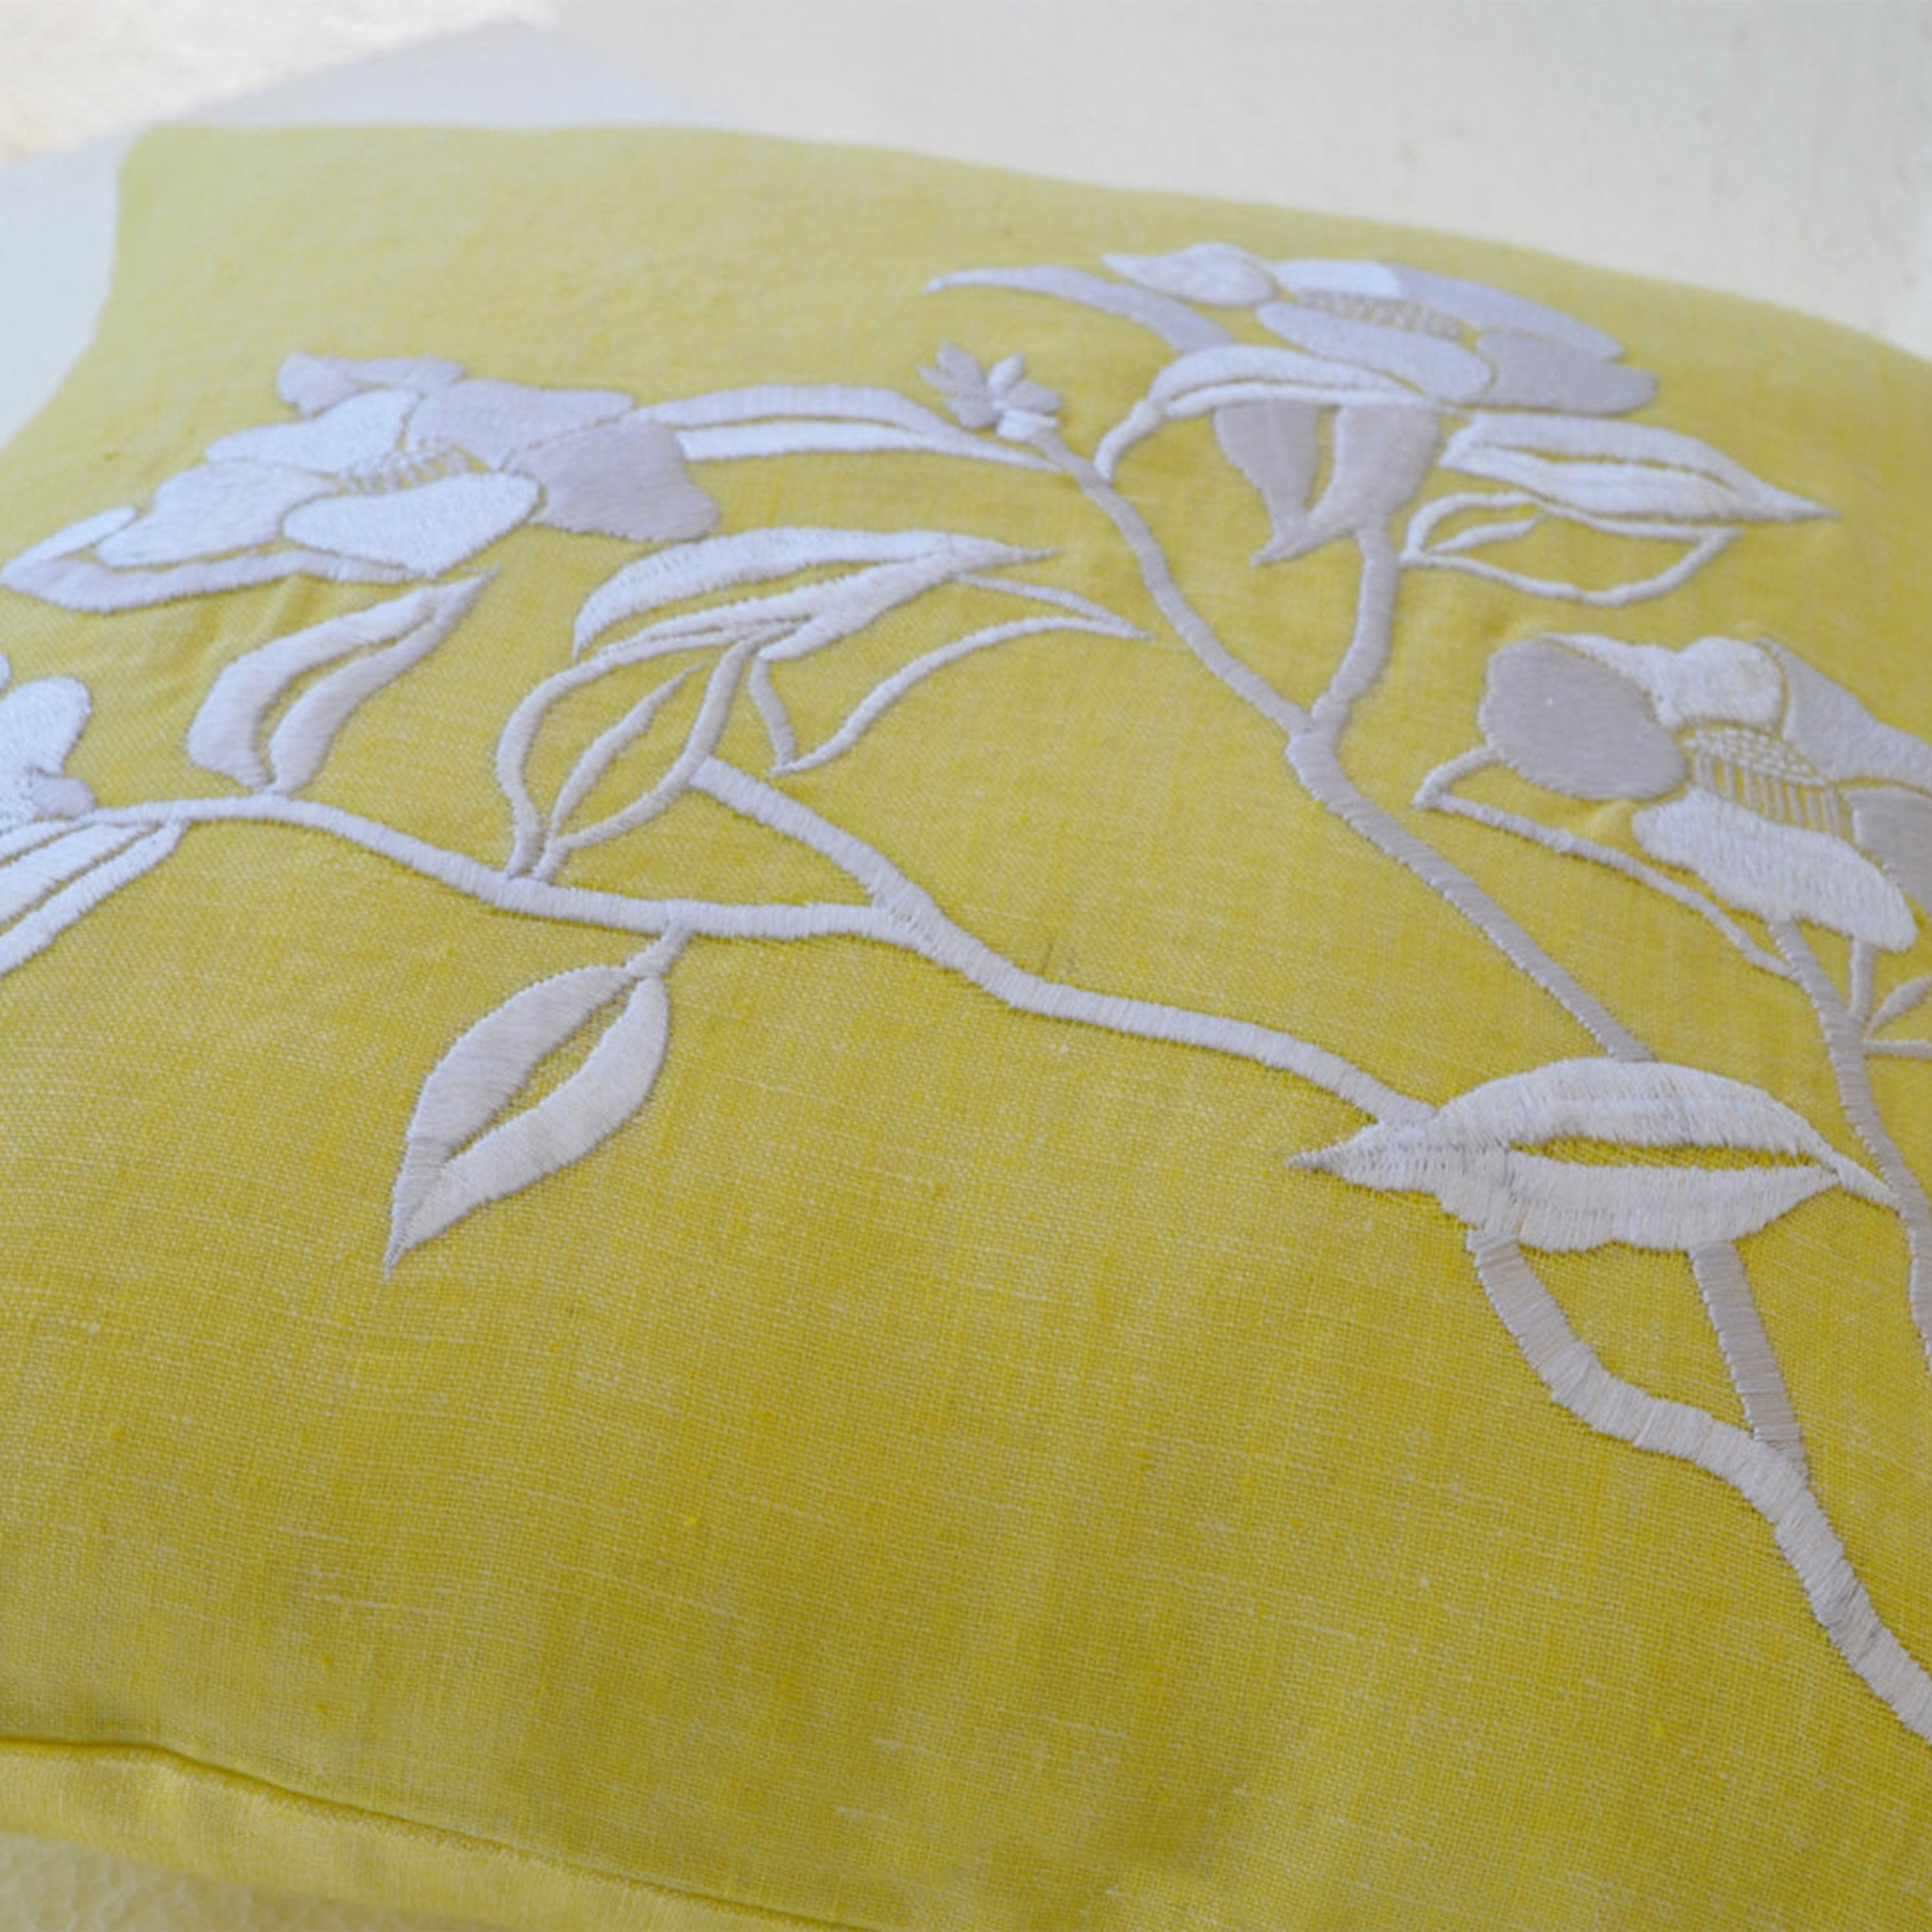 Flower Pillow- Yellow Pillow Cover -Iris Flowers Embroidered Pillow- Linen Pillow Covers- Modern Throw pillows- 16x16- Yellow White Pillows